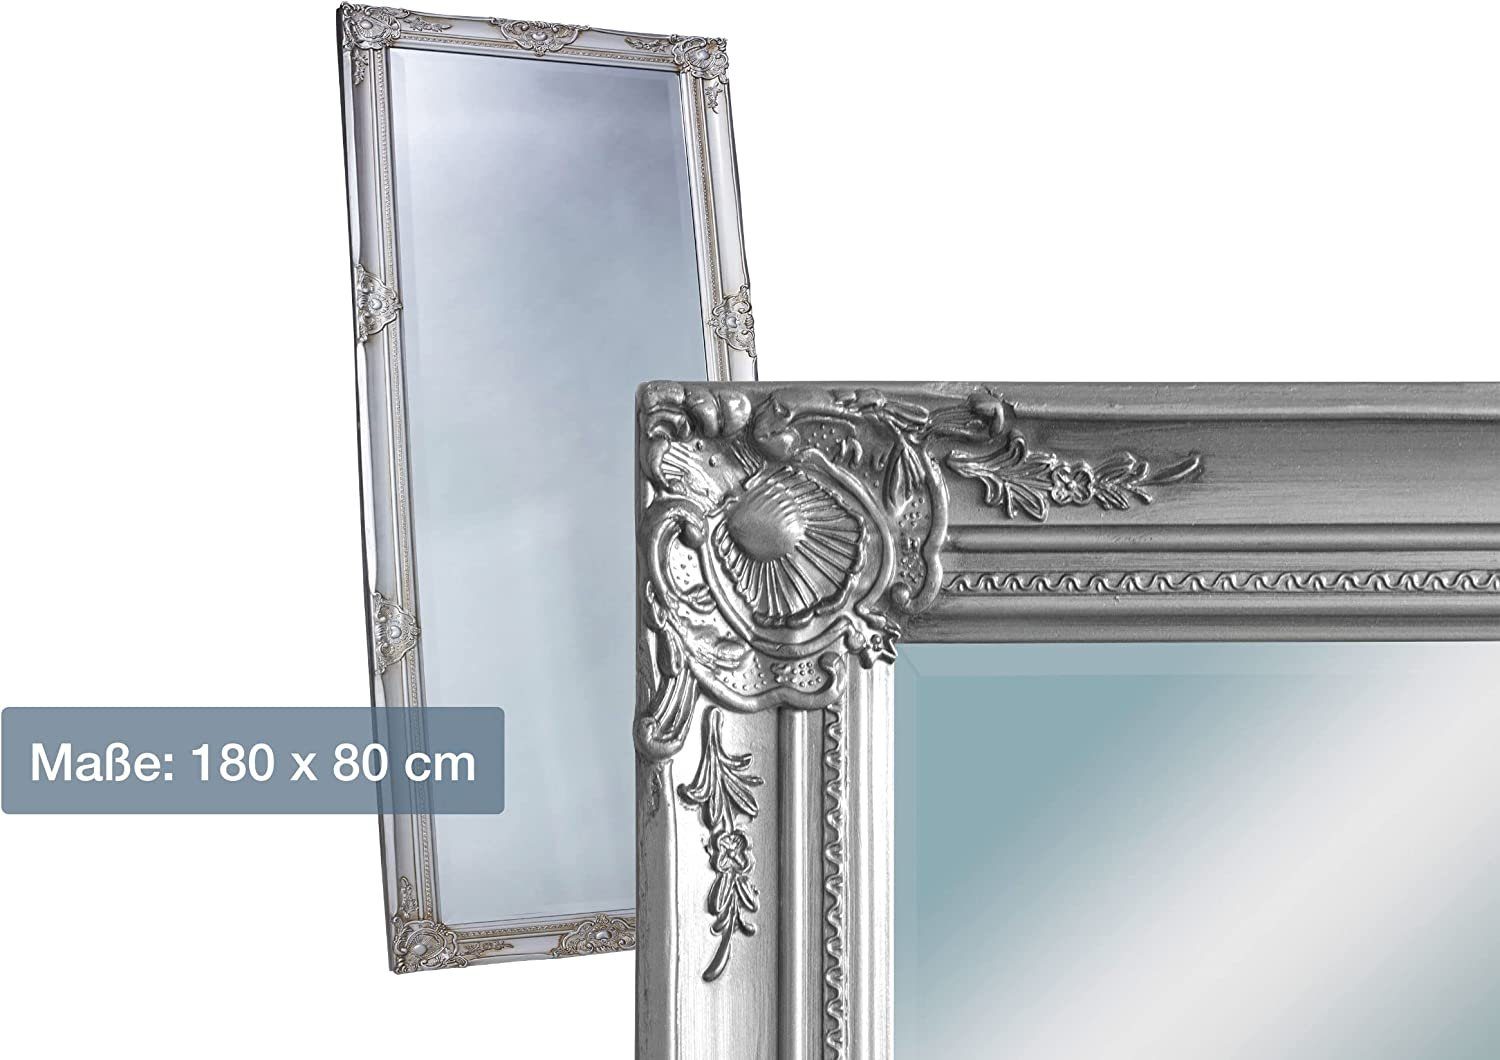 dasmöbelwerk Wandspiegel Wandspiegel Barock Silber 180x80 Spiegel Antik-Stil Ganzkörperspiegel, Spiegelfläche mit edlem Facettenschliff